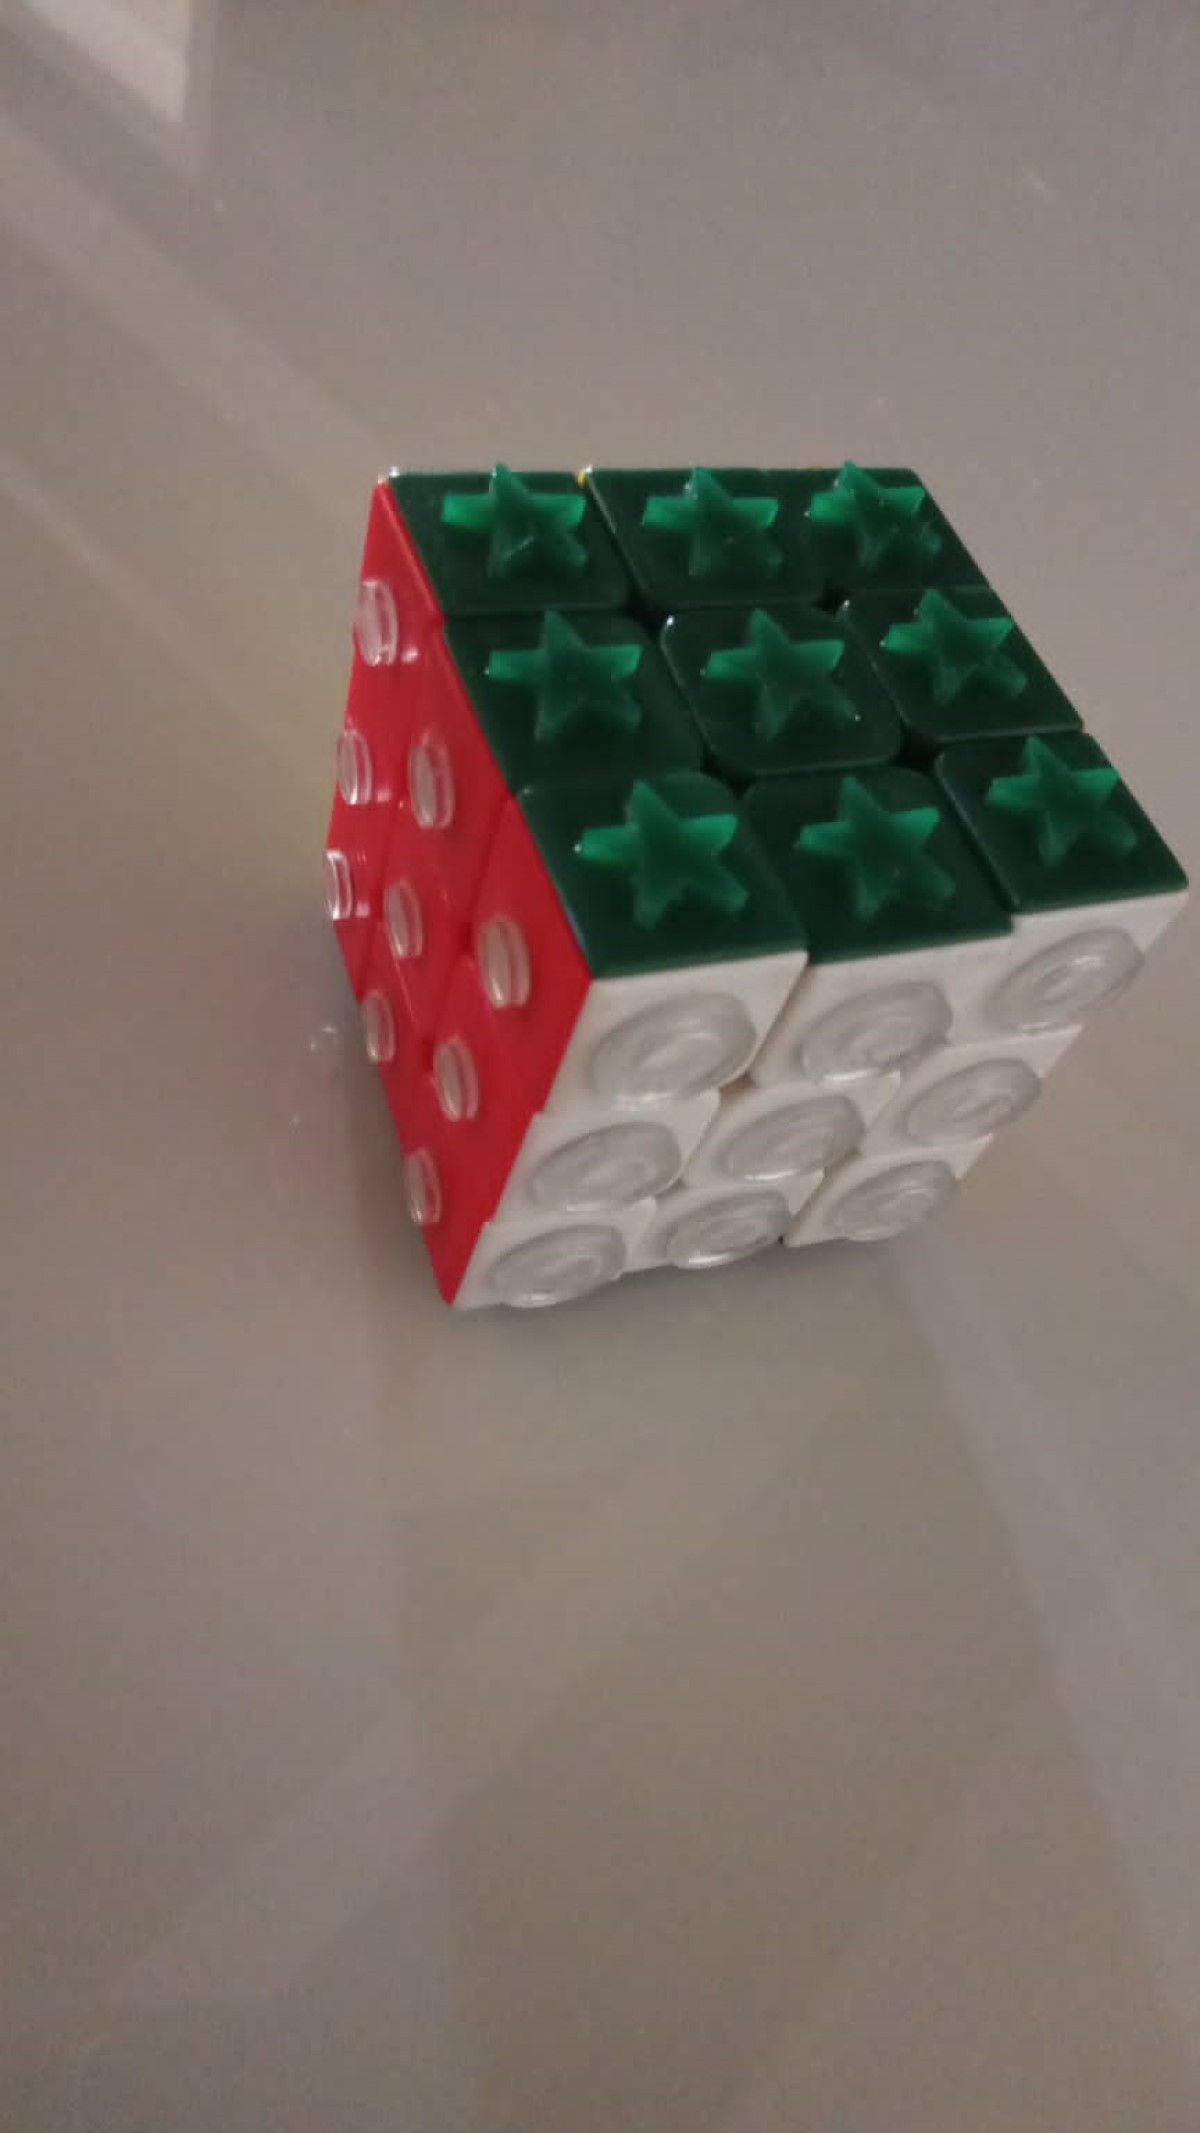 Descubra Como Resolver um Cubo Mágico em 20 Movimentos